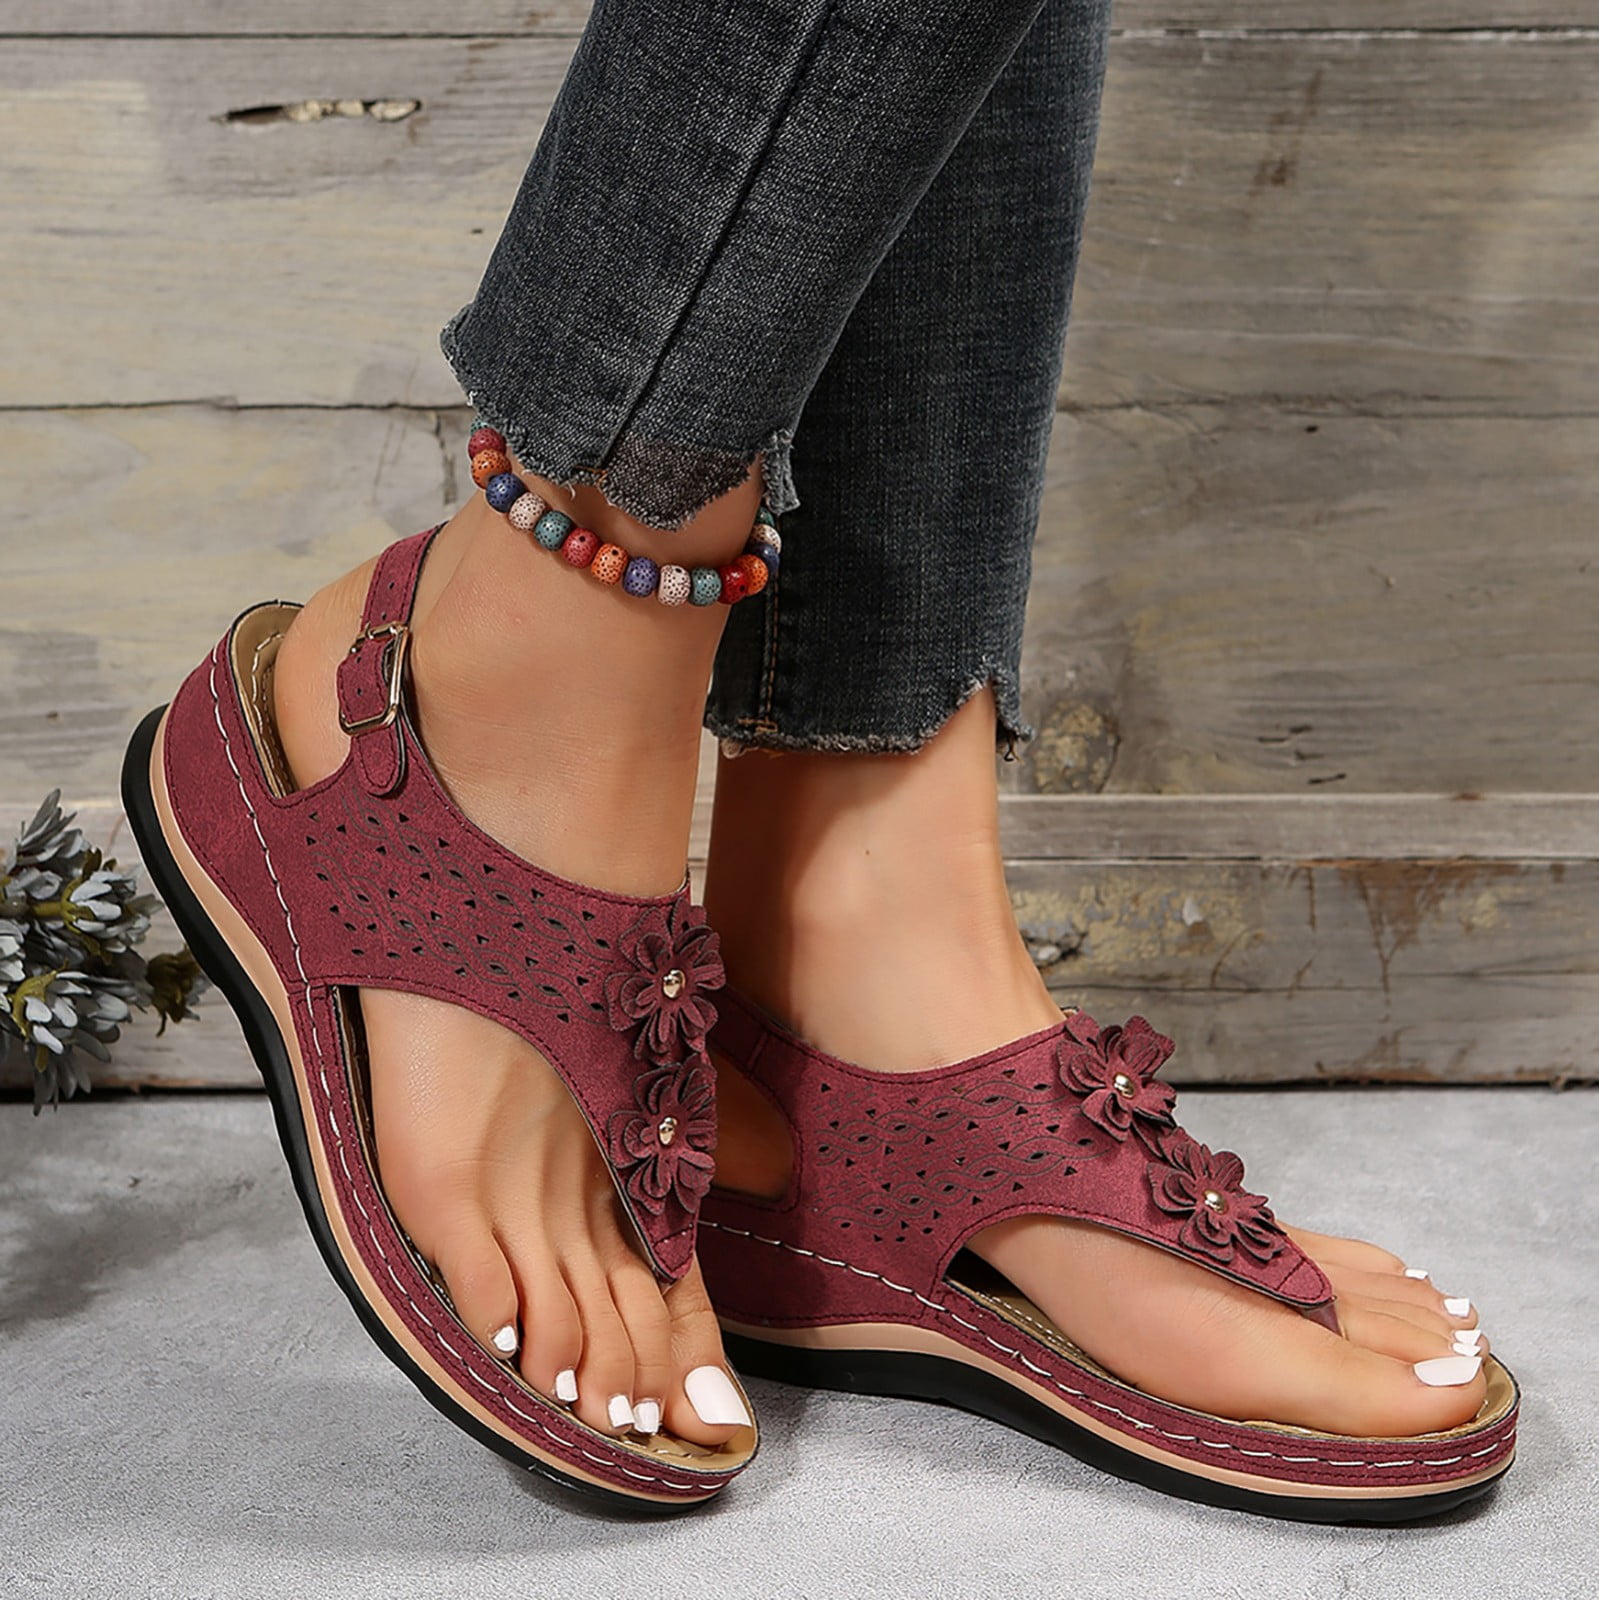 BIRKENSTOCK India: Buy Comfortable Sandals & Slippers For Men Online